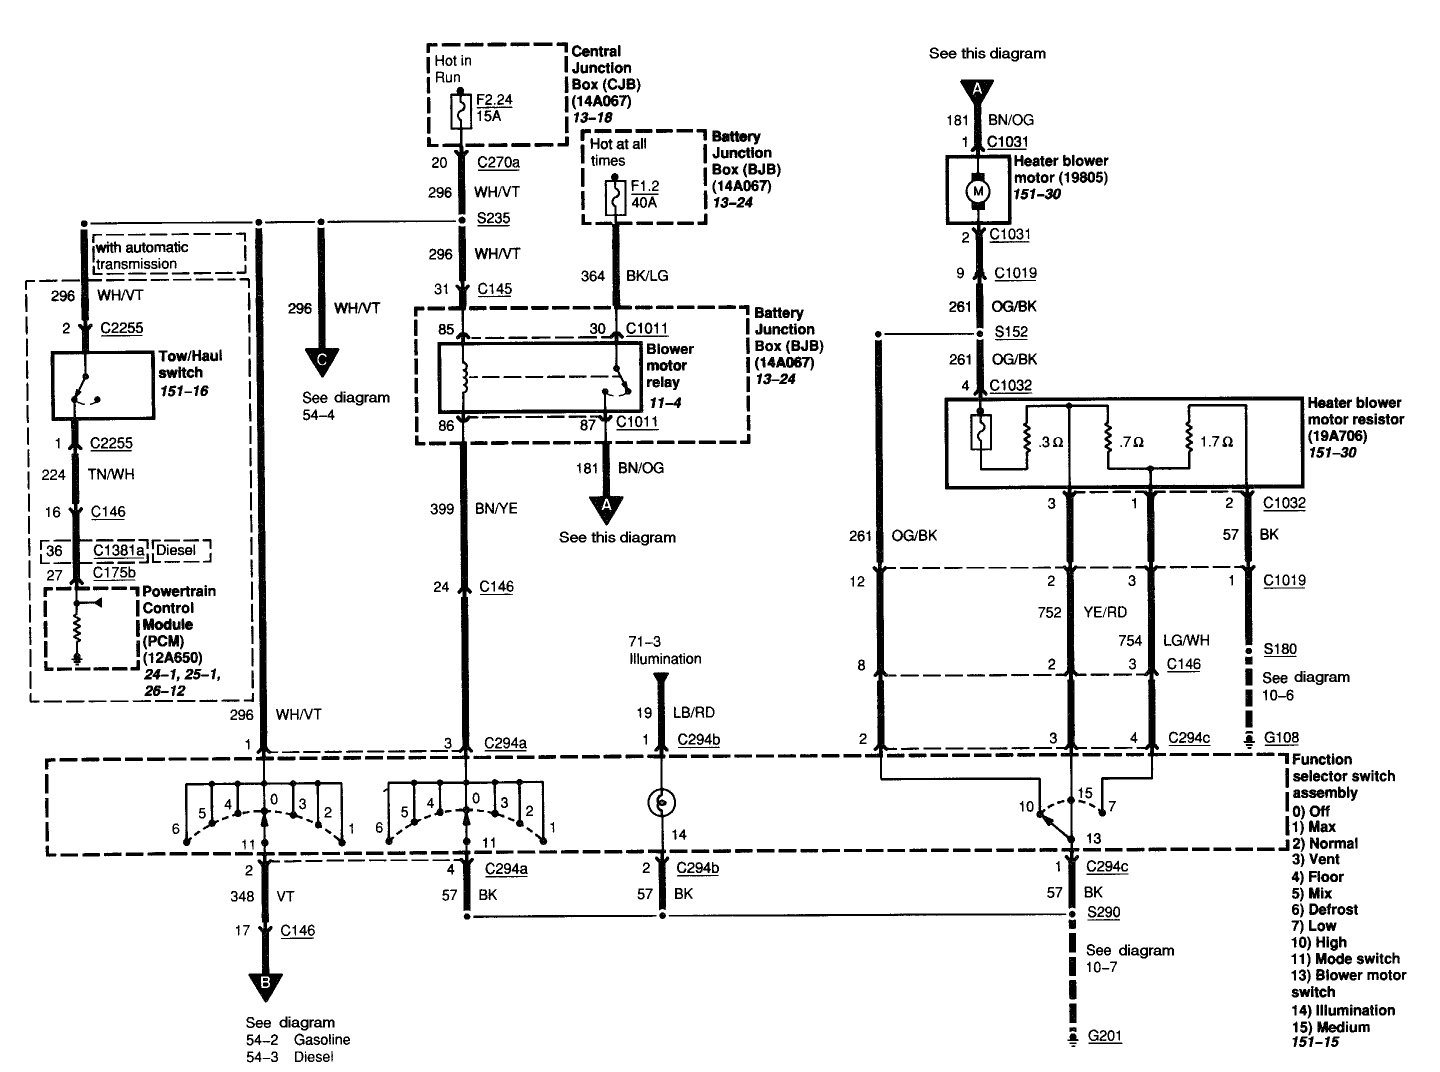 Ford Ac Wiring Diagram 16 F250 Ac Wiring Electrical Wiring Diagram